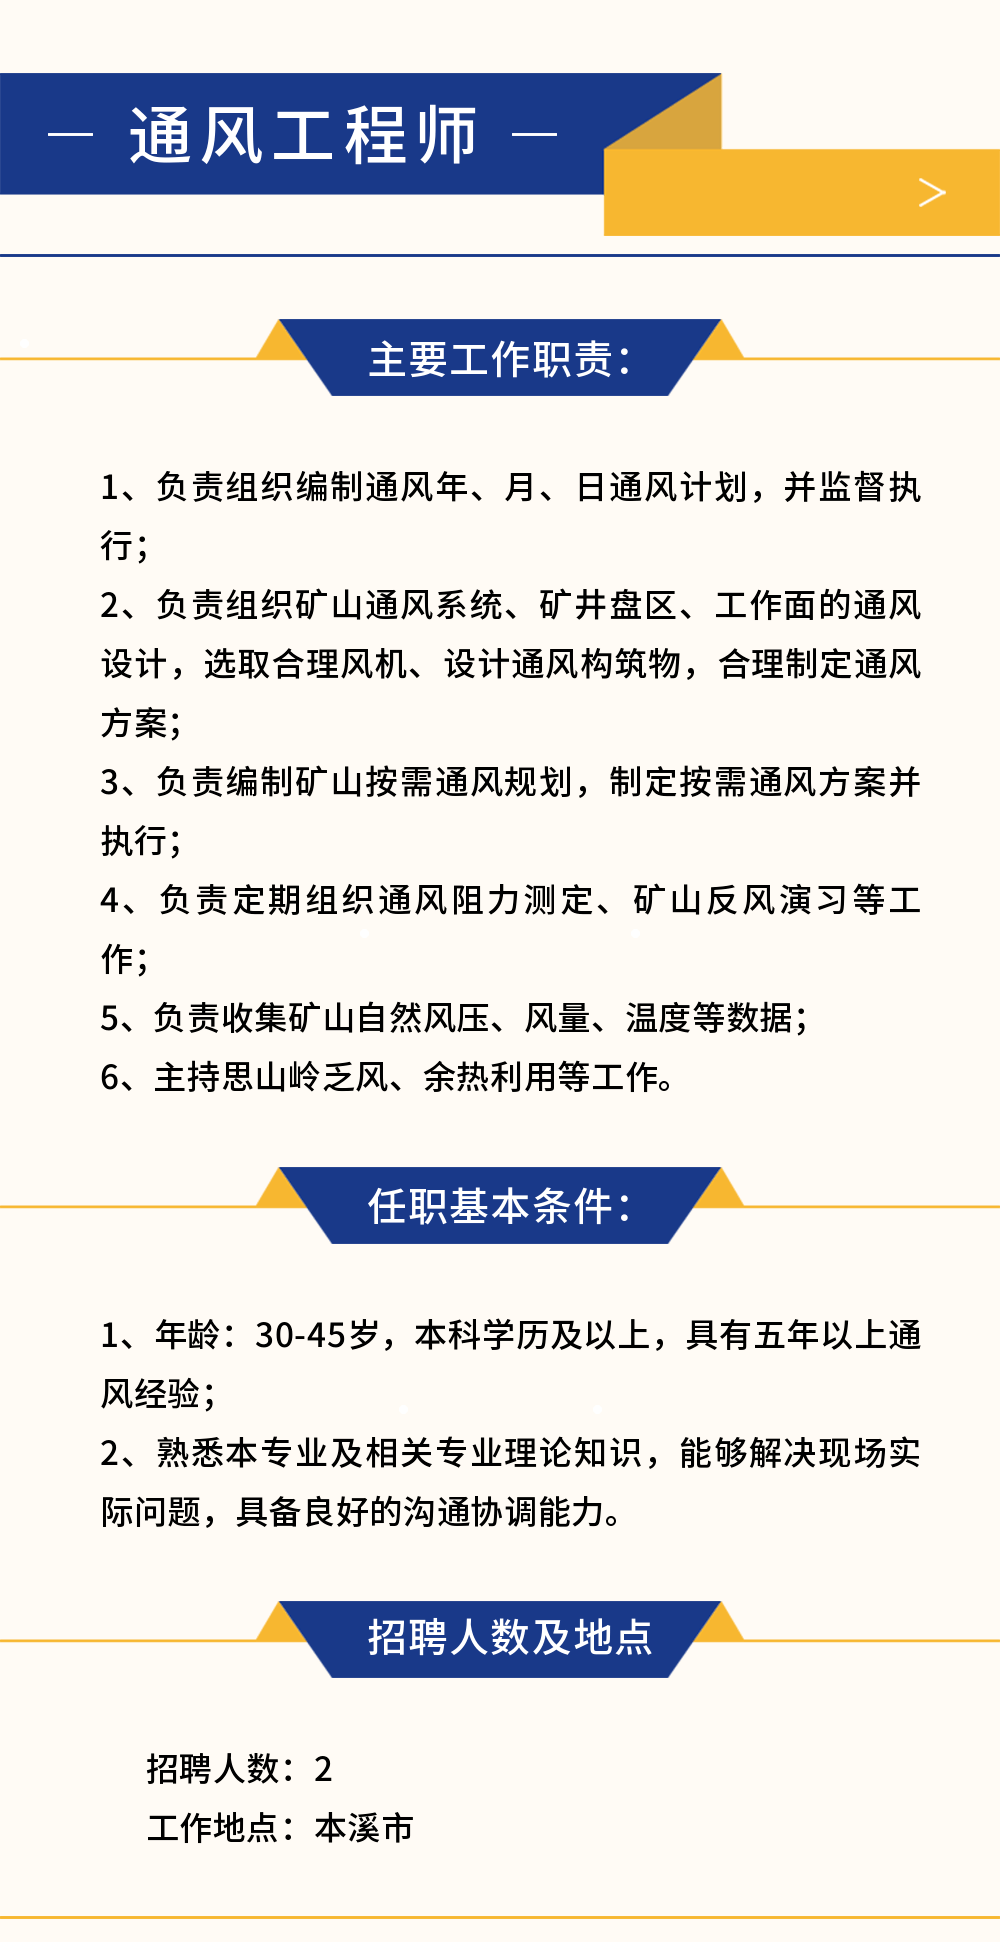 HB火博体育:「社招」有色矿业集团财务有限公司10岗位公开招聘